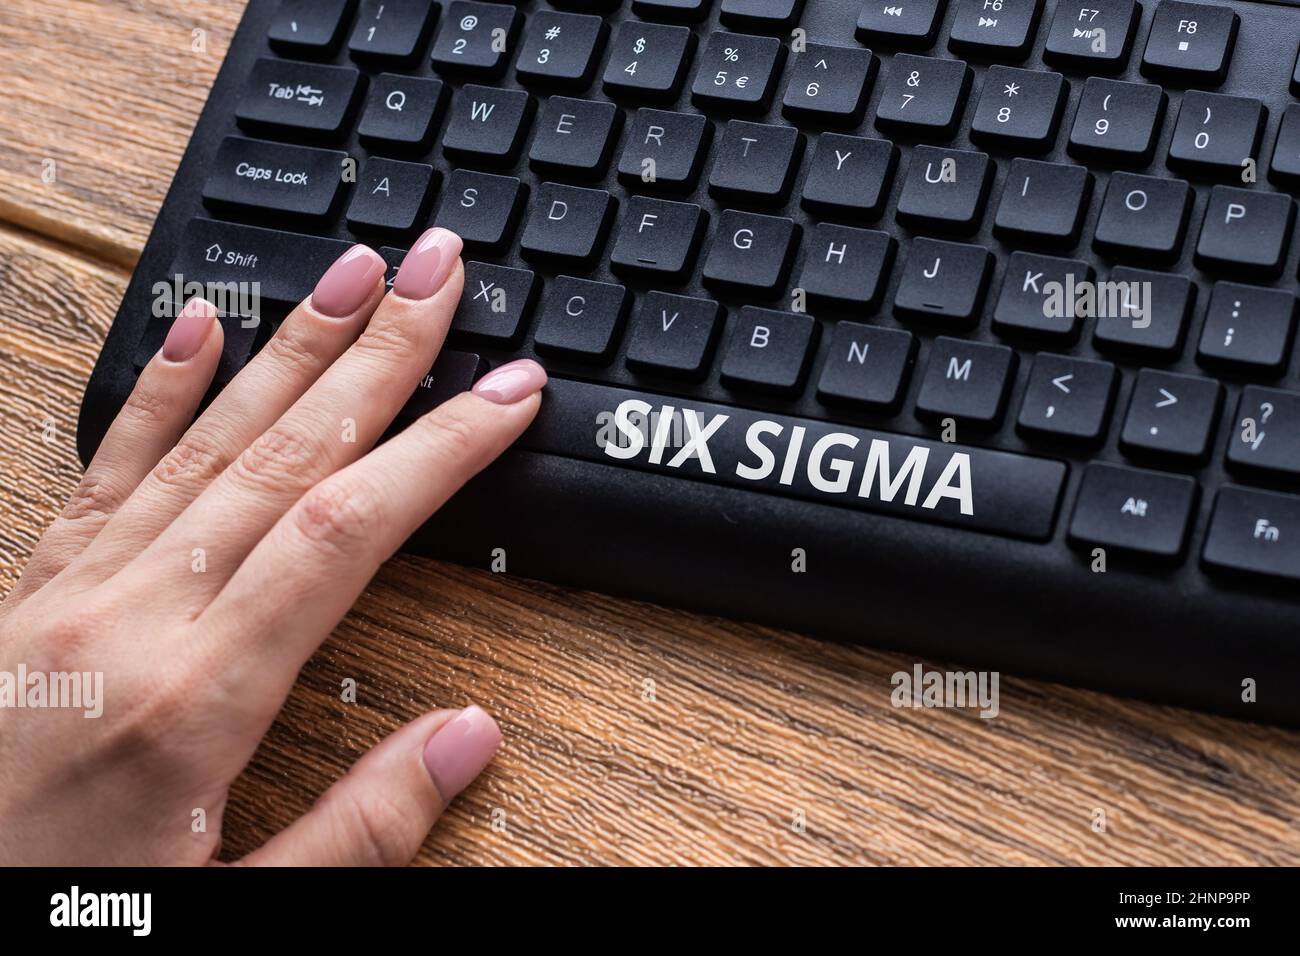 Inspiration zeigt Zeichen Six Sigma. Konzeptionelle Foto-Set von Management-Techniken zur Verbesserung der Geschäftsprozesse Hände zeigen Drücken von Computer-Tastatur Tasten Schreibmaschine Neue Ideen. Stockfoto